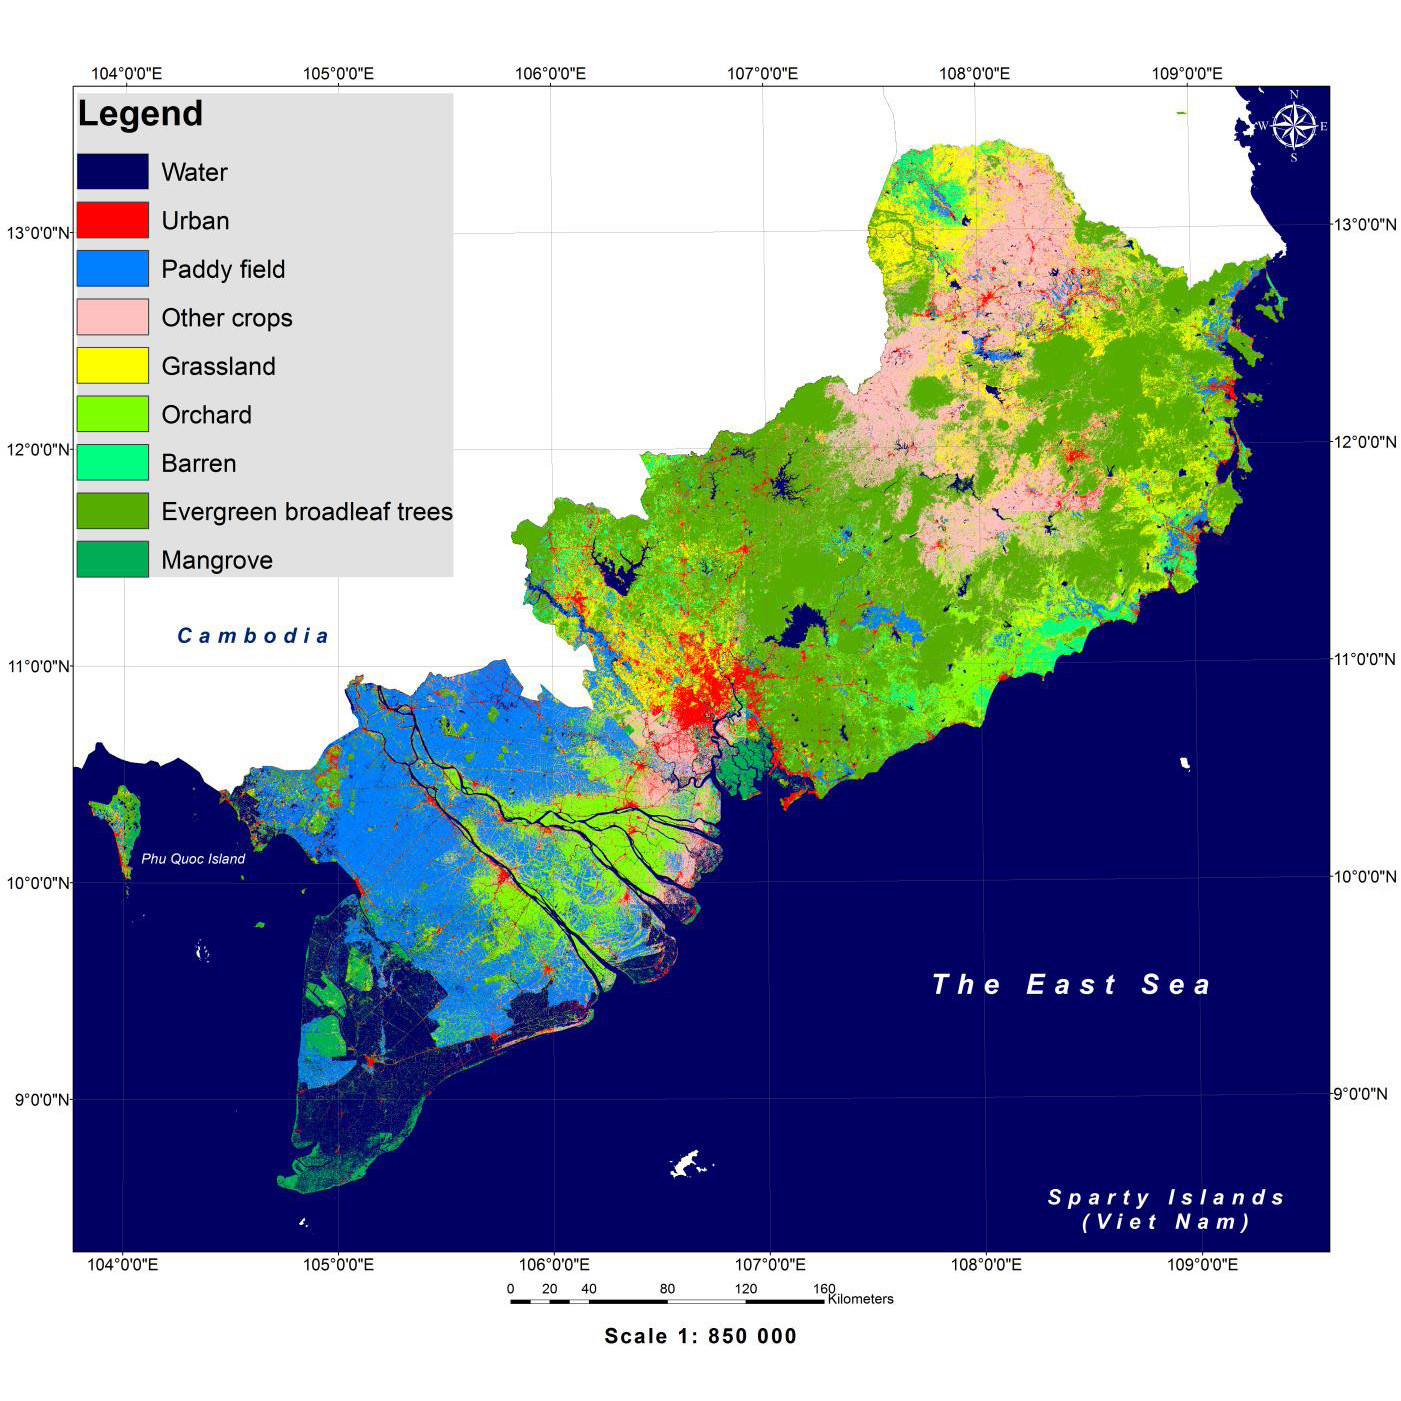 ベトナム南部域高解像度土地利用土地被覆図(ver.18.09)を公開しました。